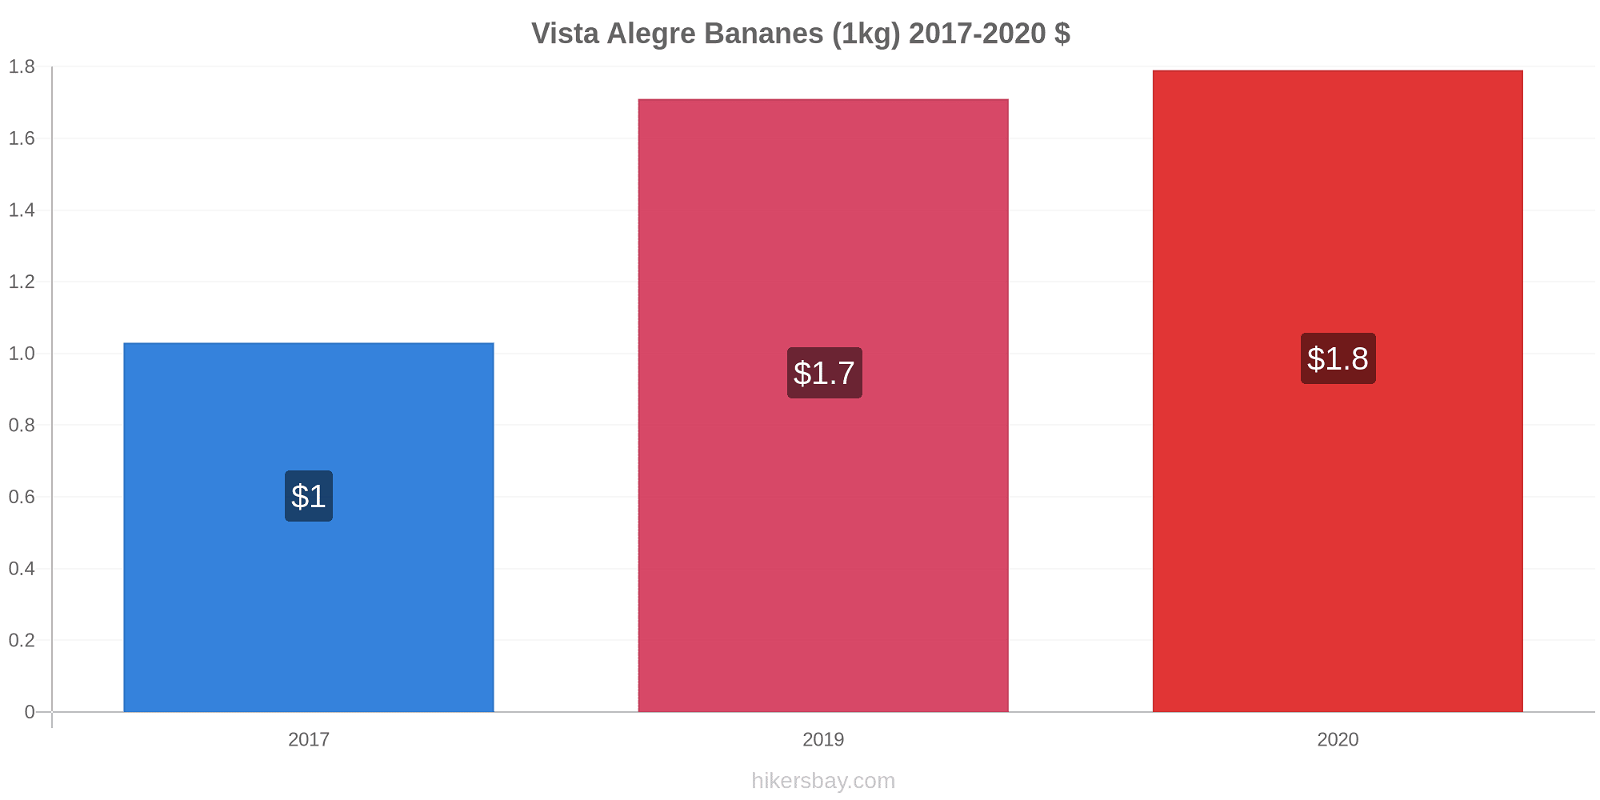 Vista Alegre changements de prix Bananes (1kg) hikersbay.com